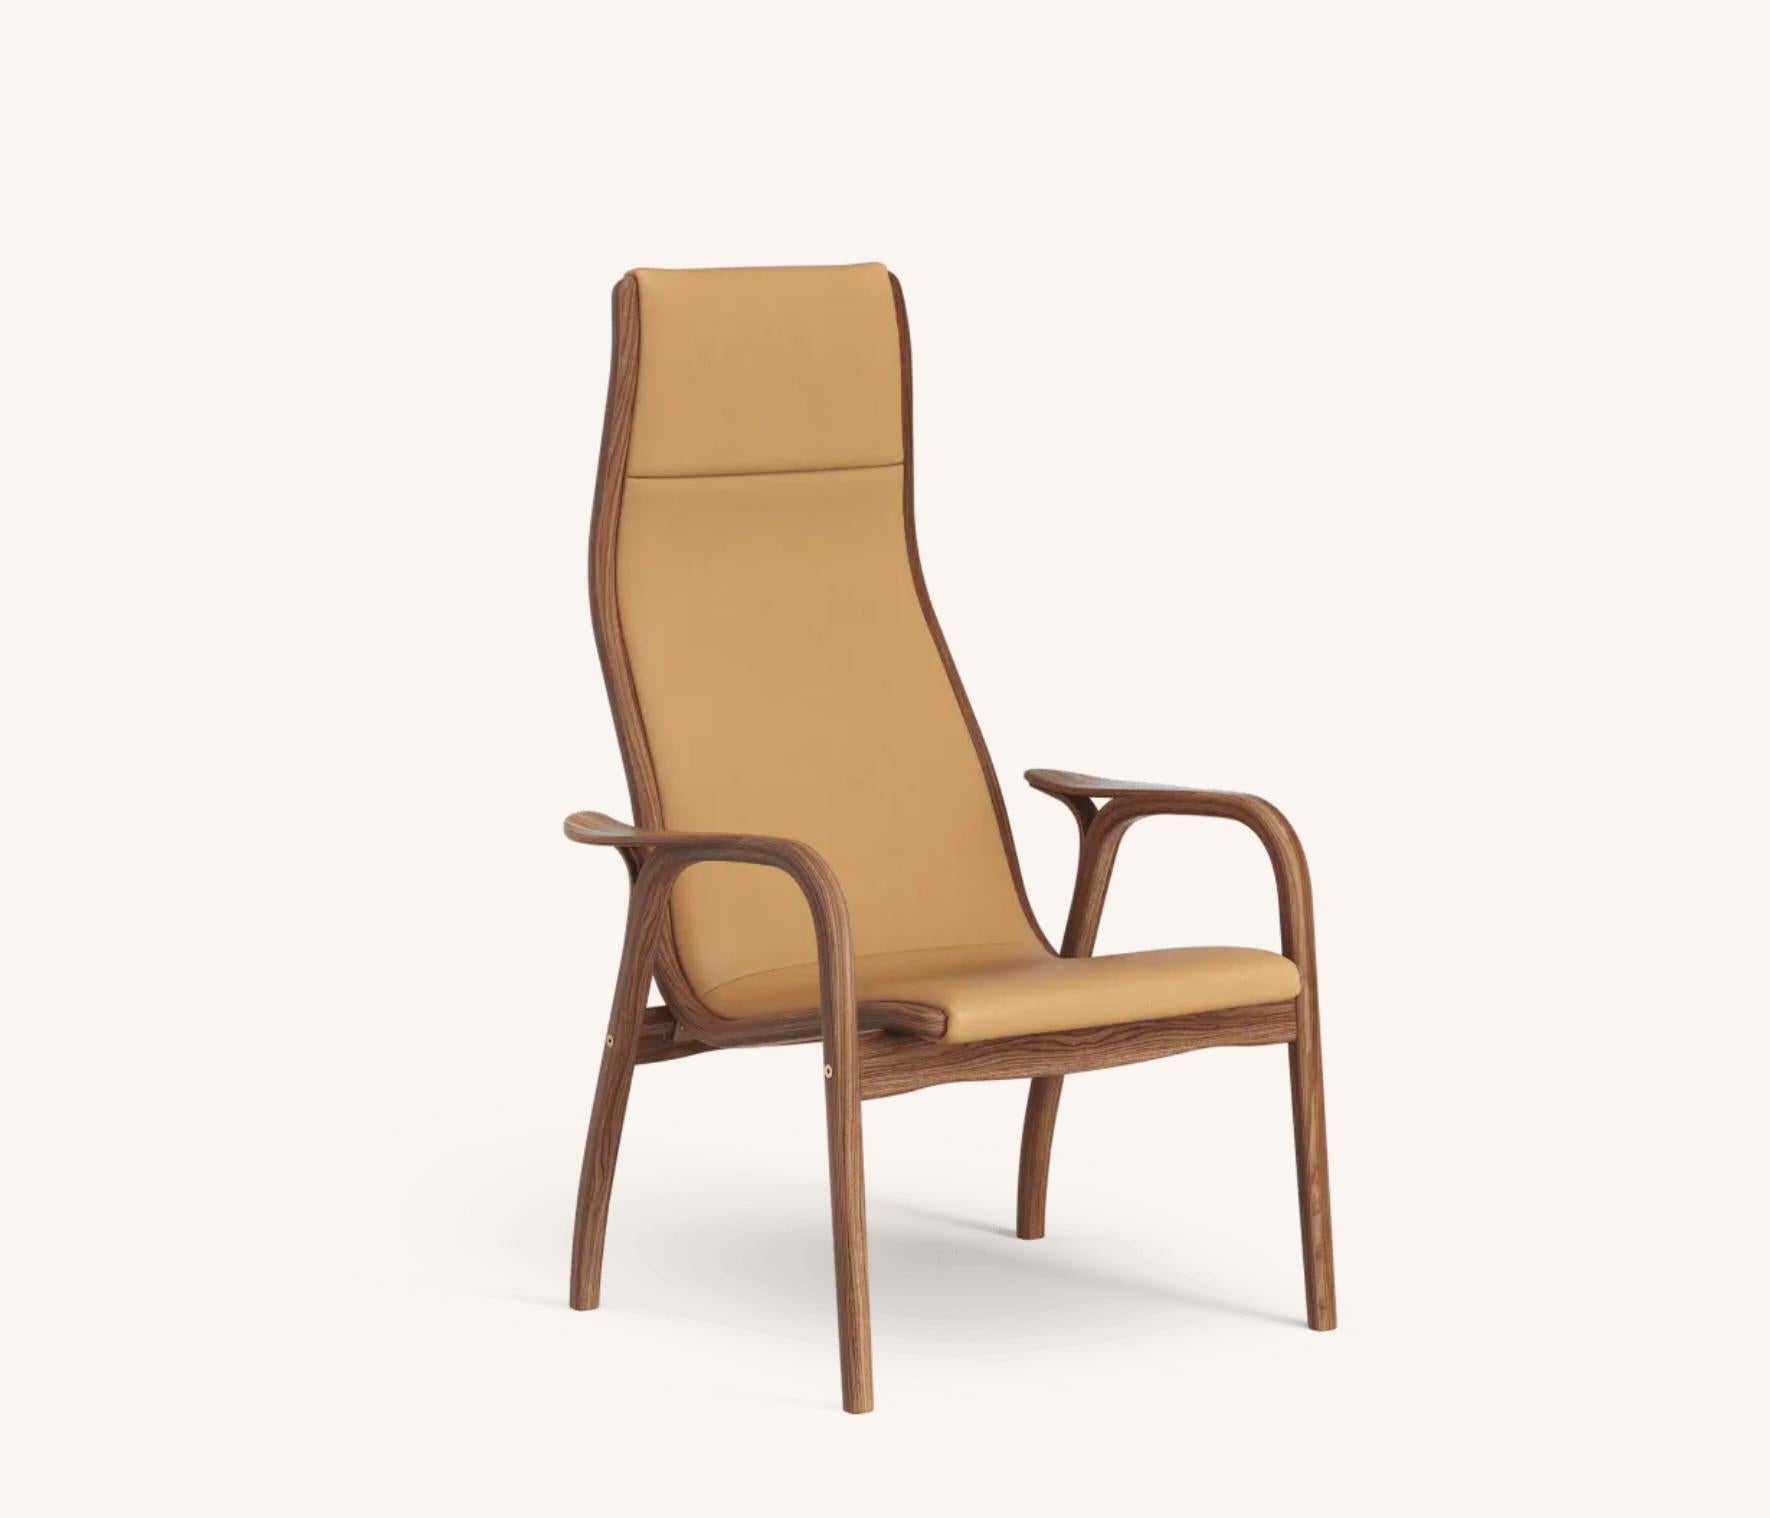 Yngve Ekström Lamino Sessel von Swedese in Nussbaum und Cognac Leder 'Elmo Baltique 43001'. Neu, Entwurf von 1956.

Der Lamino von Yngve Ekström ist einer der kultigsten skandinavischen Sessel. Dieser 1956 entworfene Stuhl ist nie aus der Mode